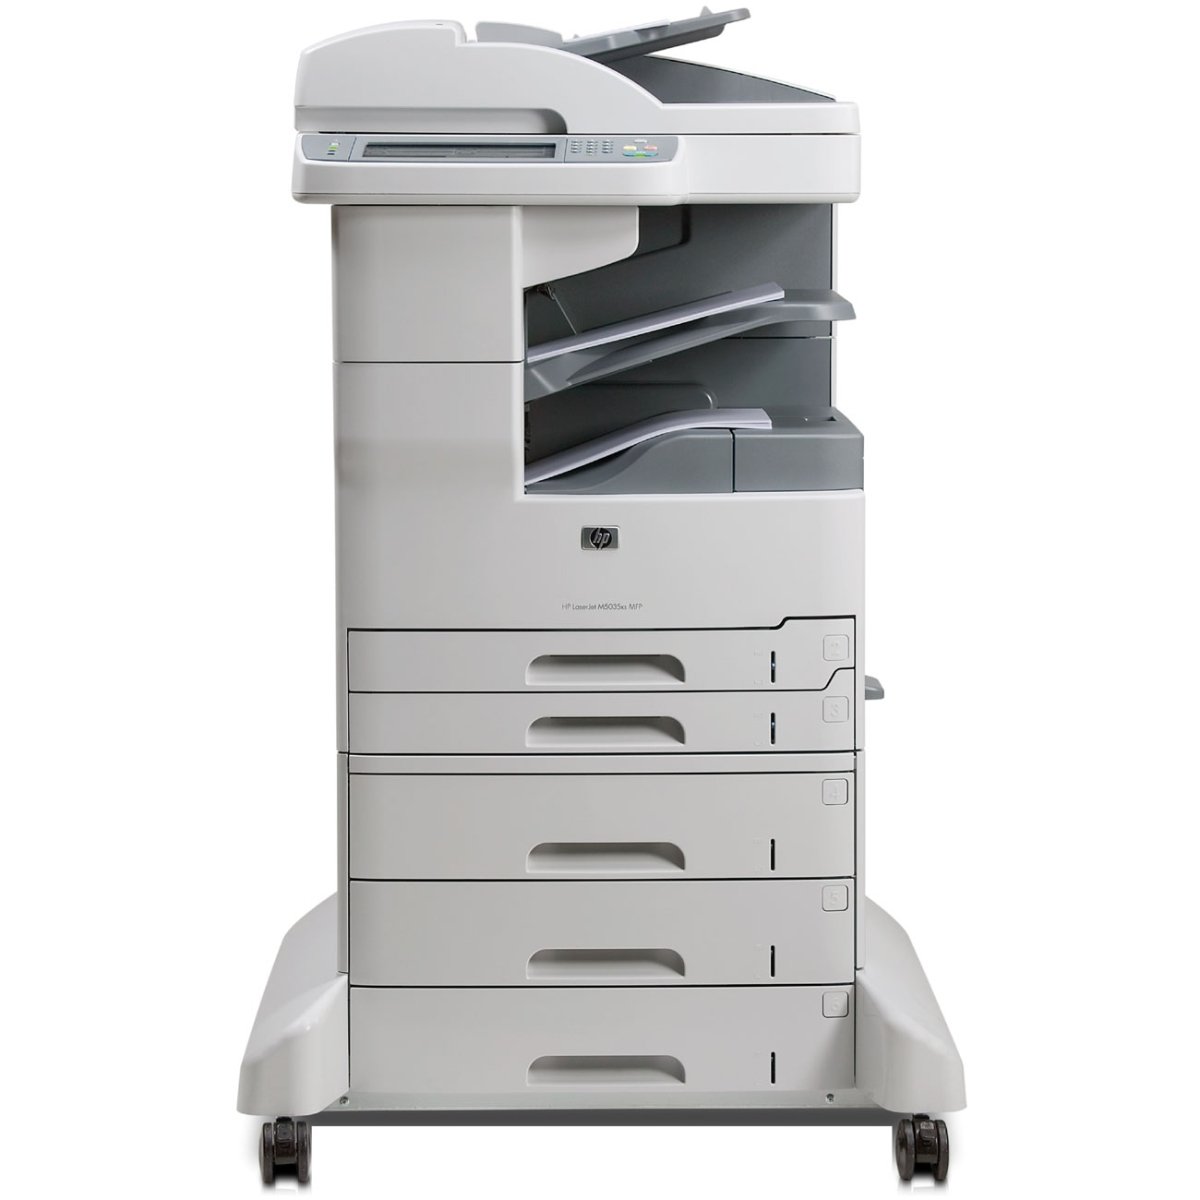 LaserJet M5035 Multifunction Printer series